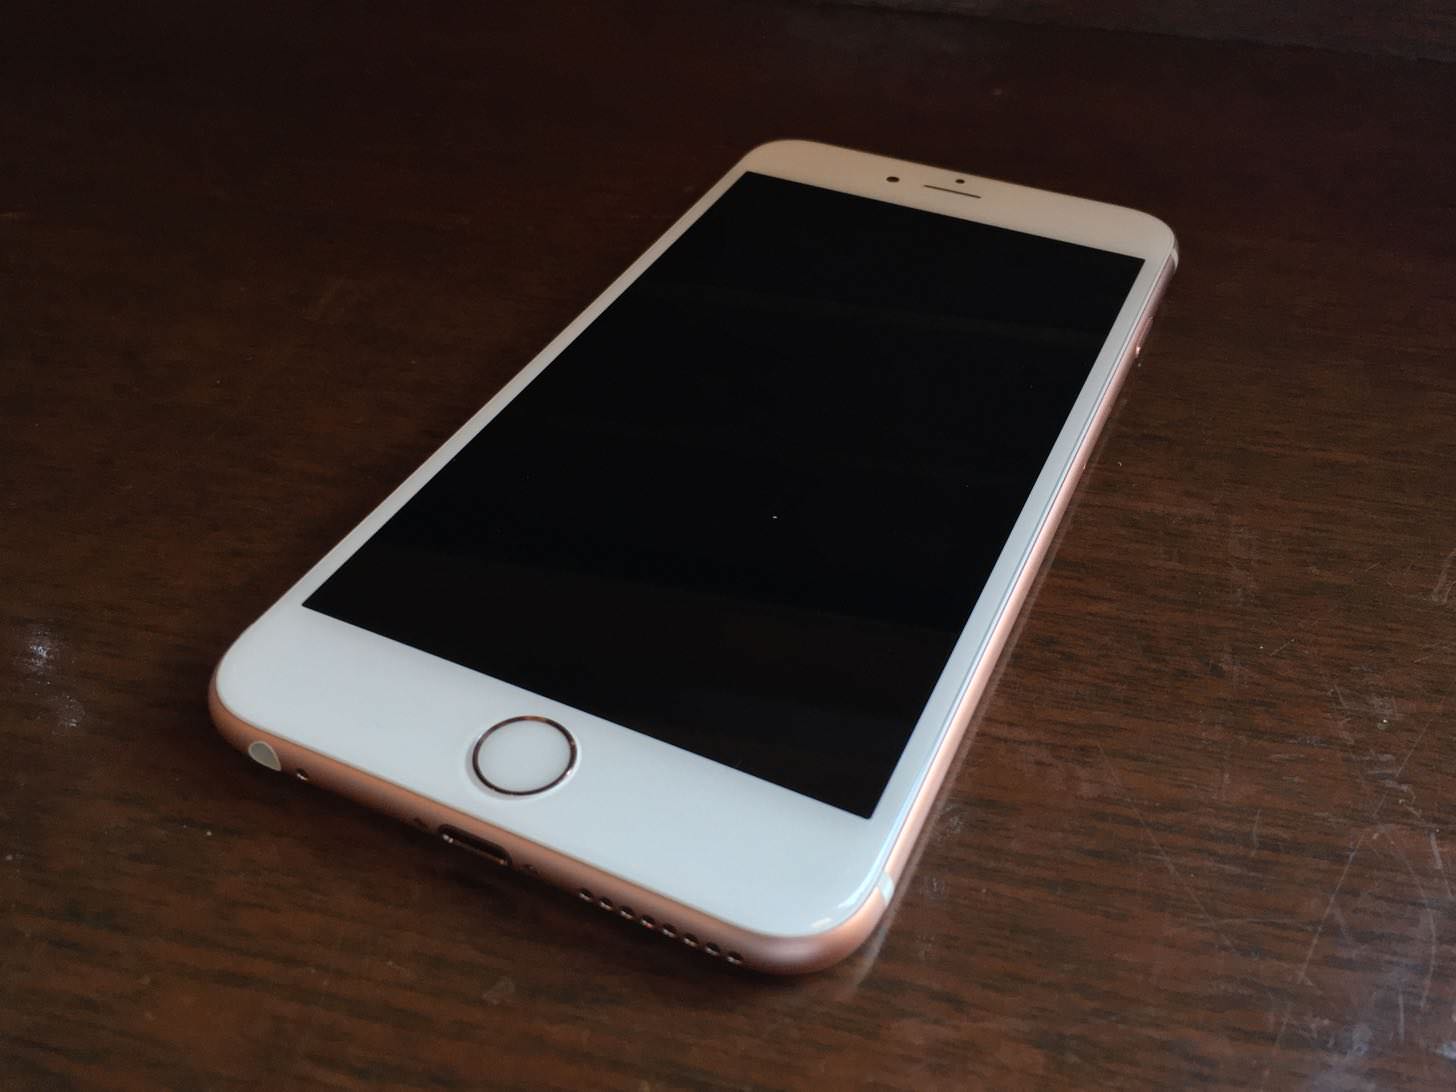 iPhone 6s Plus ローズゴールド 64GBの正面。